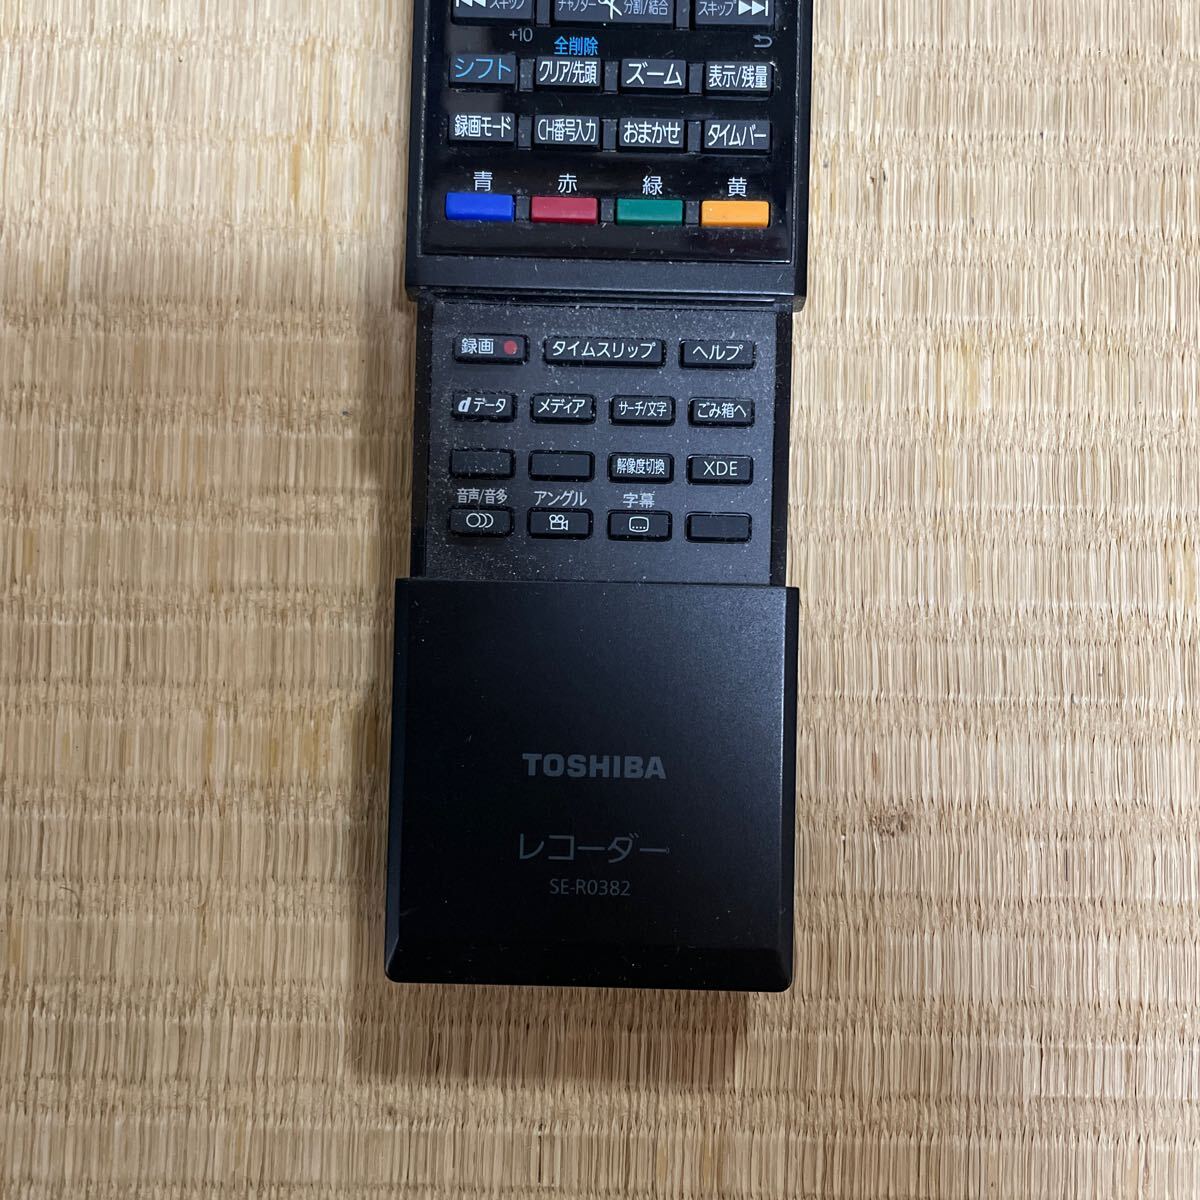  рабочее состояние подтверждено [TOSHIBA]*SE-R0382*TV телевизор дистанционный пульт Toshiba 